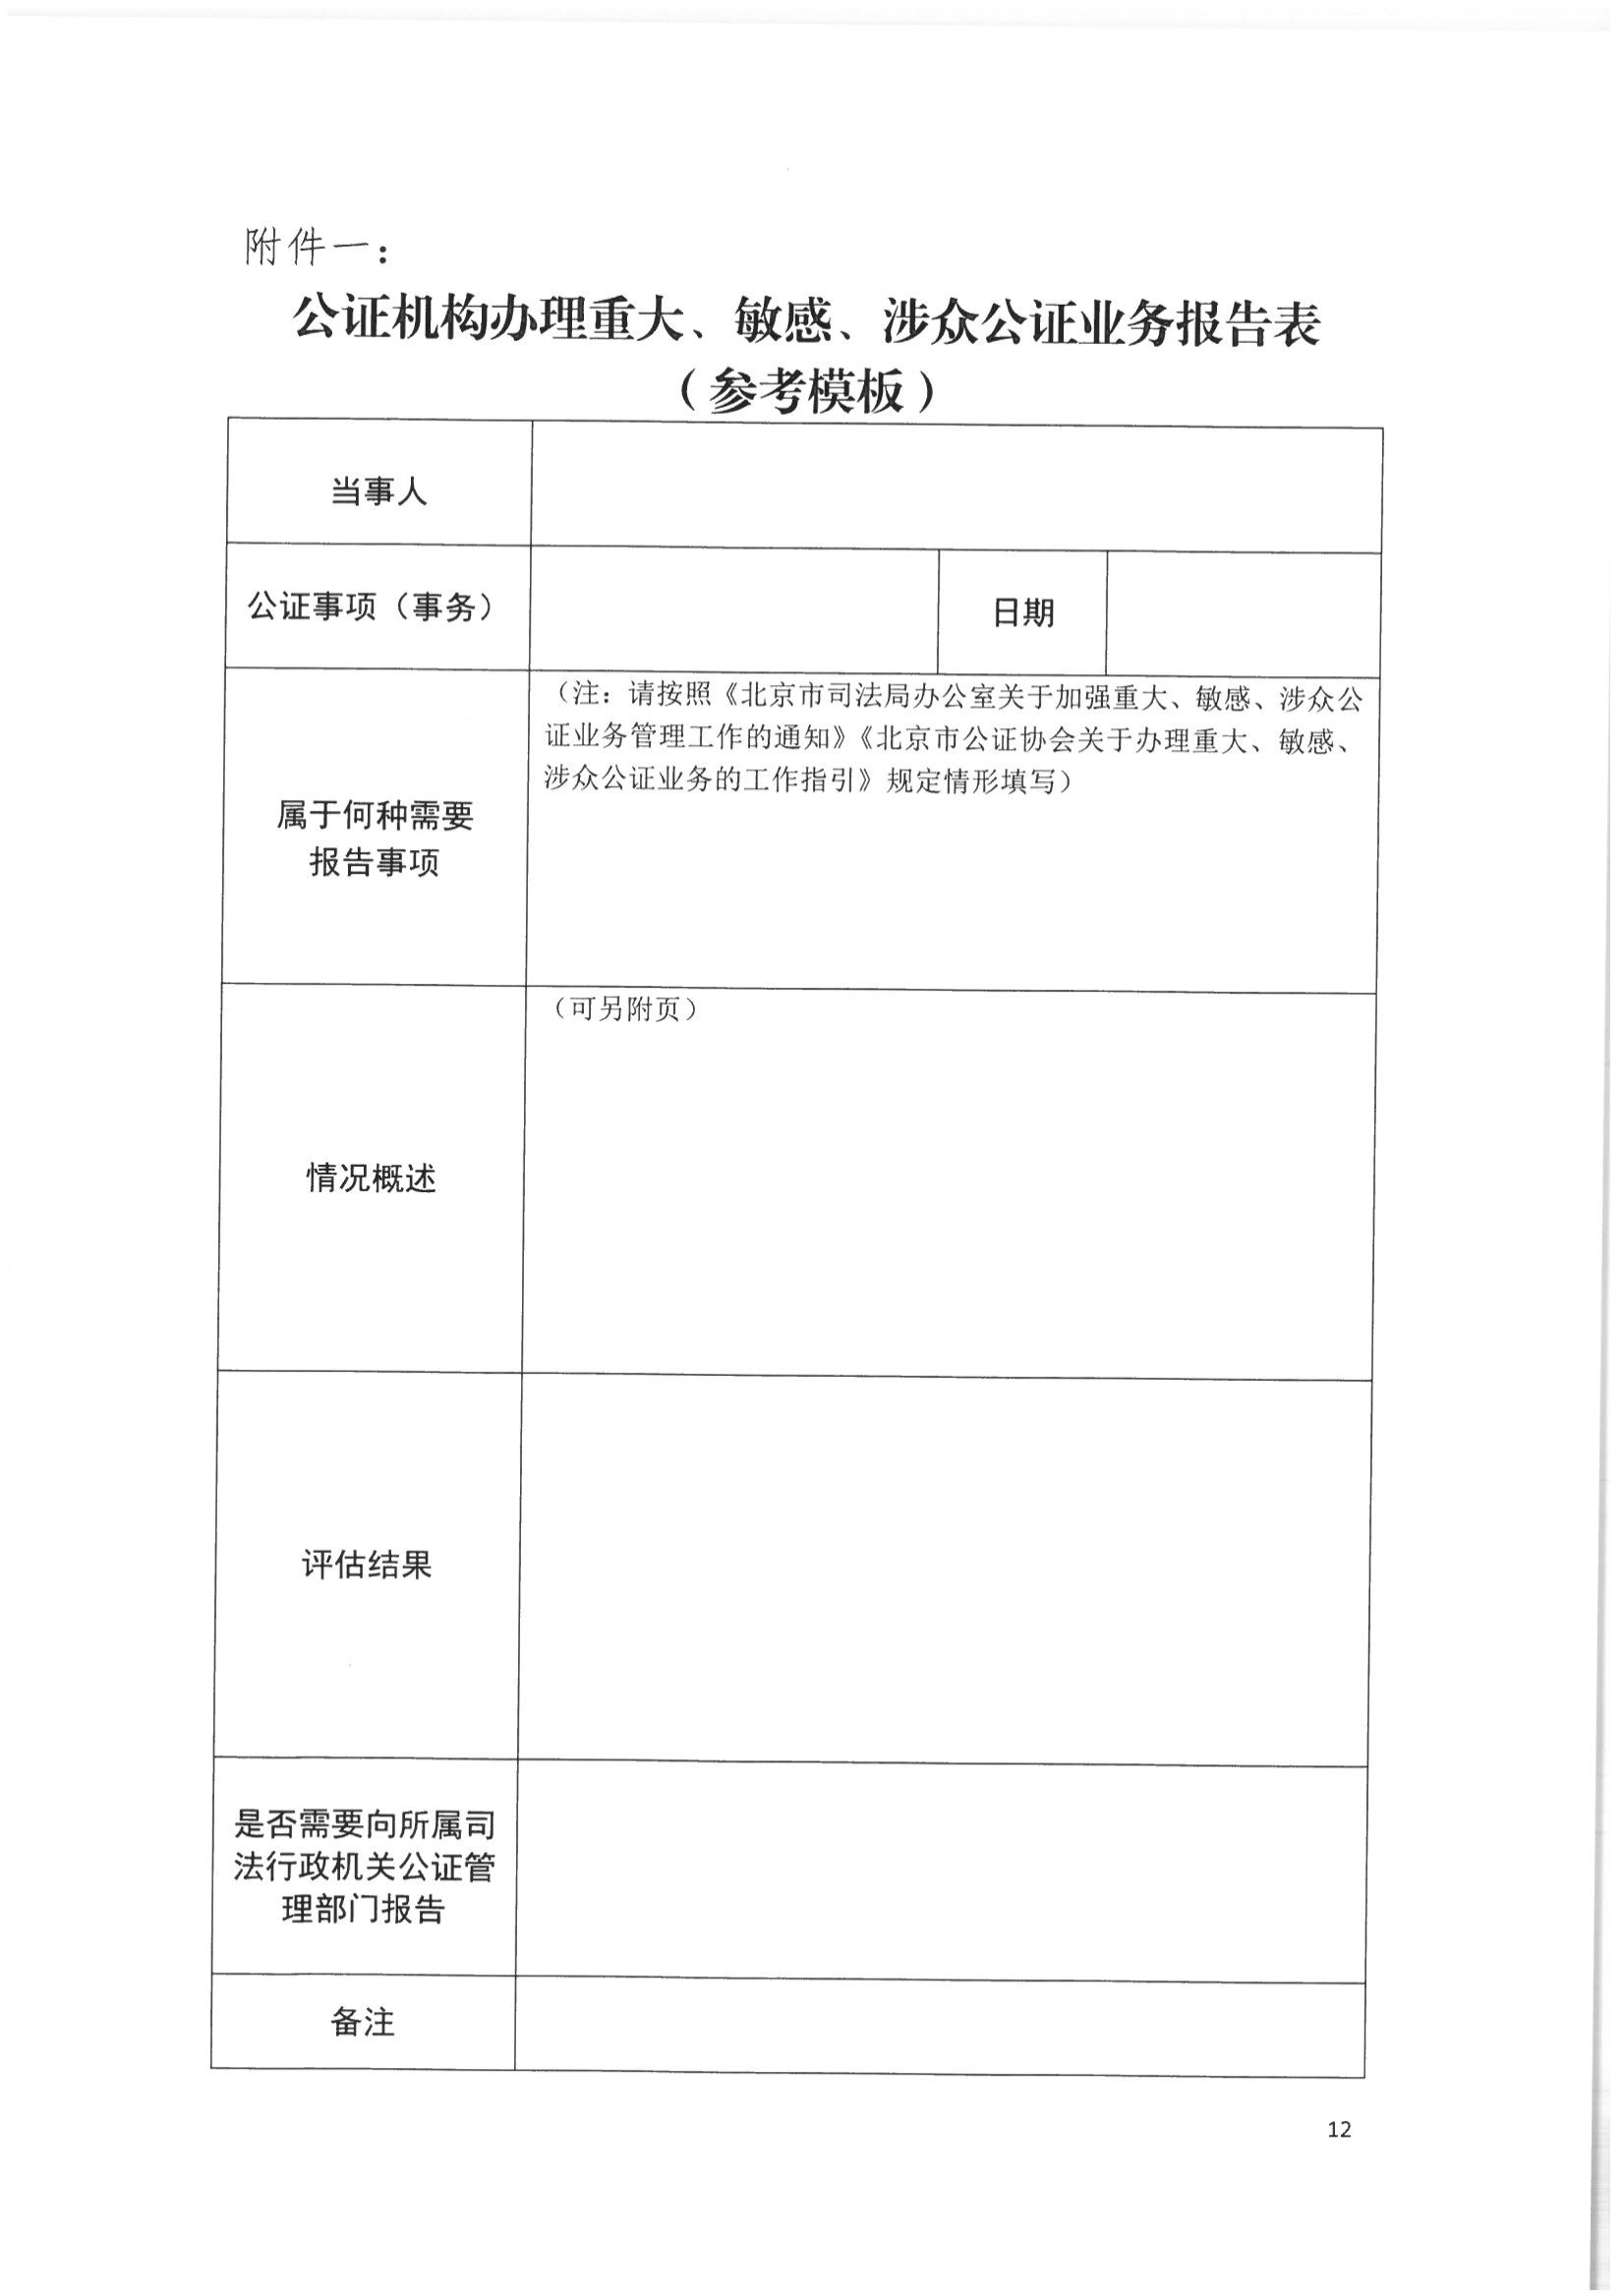 2北京市公证协会关于印发《北京市公证协会关于办理重大、敏感、涉众公证业务的工作指引》的通知(1)_11